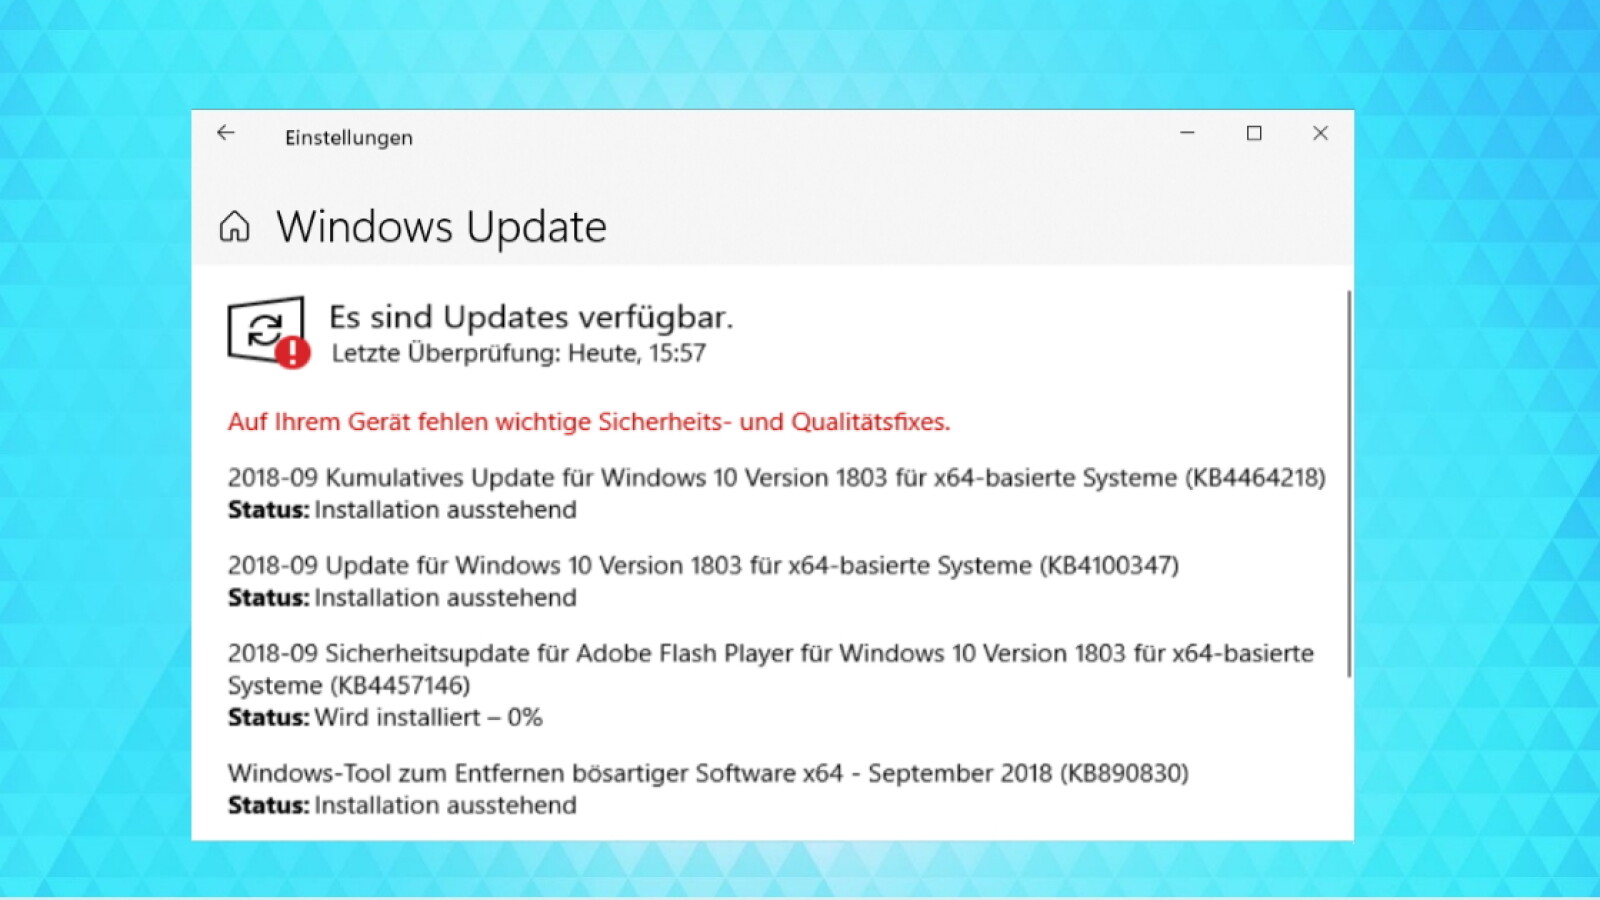 Überprüfen Sie auf verfügbare Updates über die Windows Update-Funktion.
Installieren Sie alle wichtigen Updates und Patches.